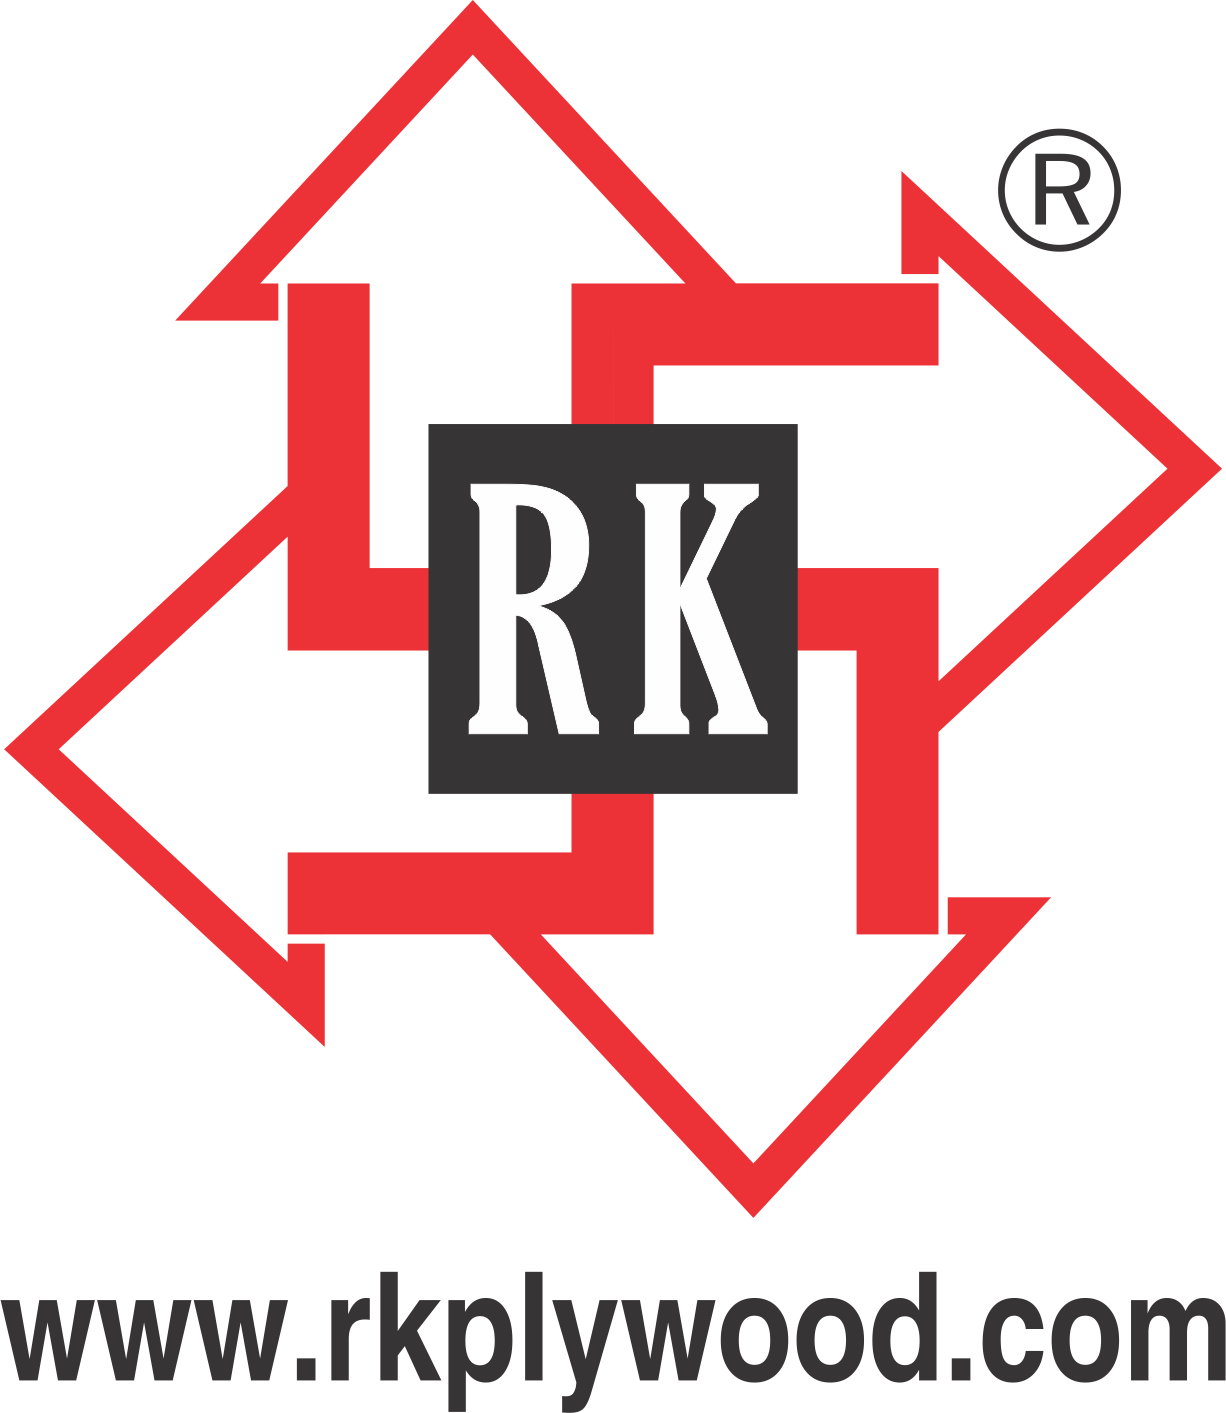 R.K. ENTERPRISES (HOUSE OF PLYWOOD)